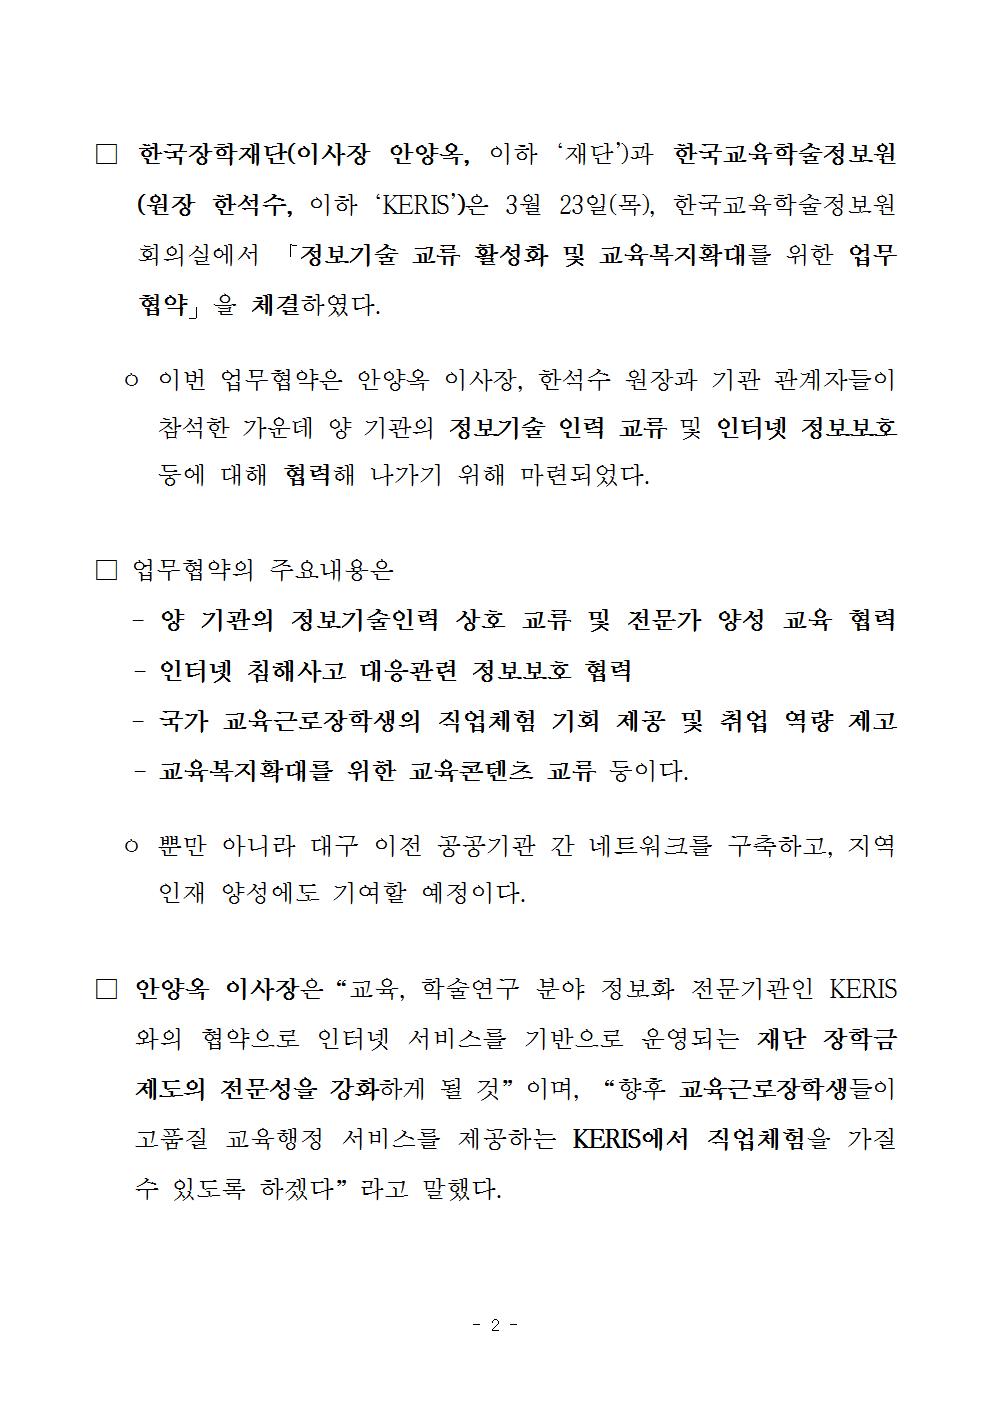 03-23(목)[보도자료] 한국교육학술정보원과 정보기술인력 상호 교류 등을 위한 업무협약 체결002.jpg